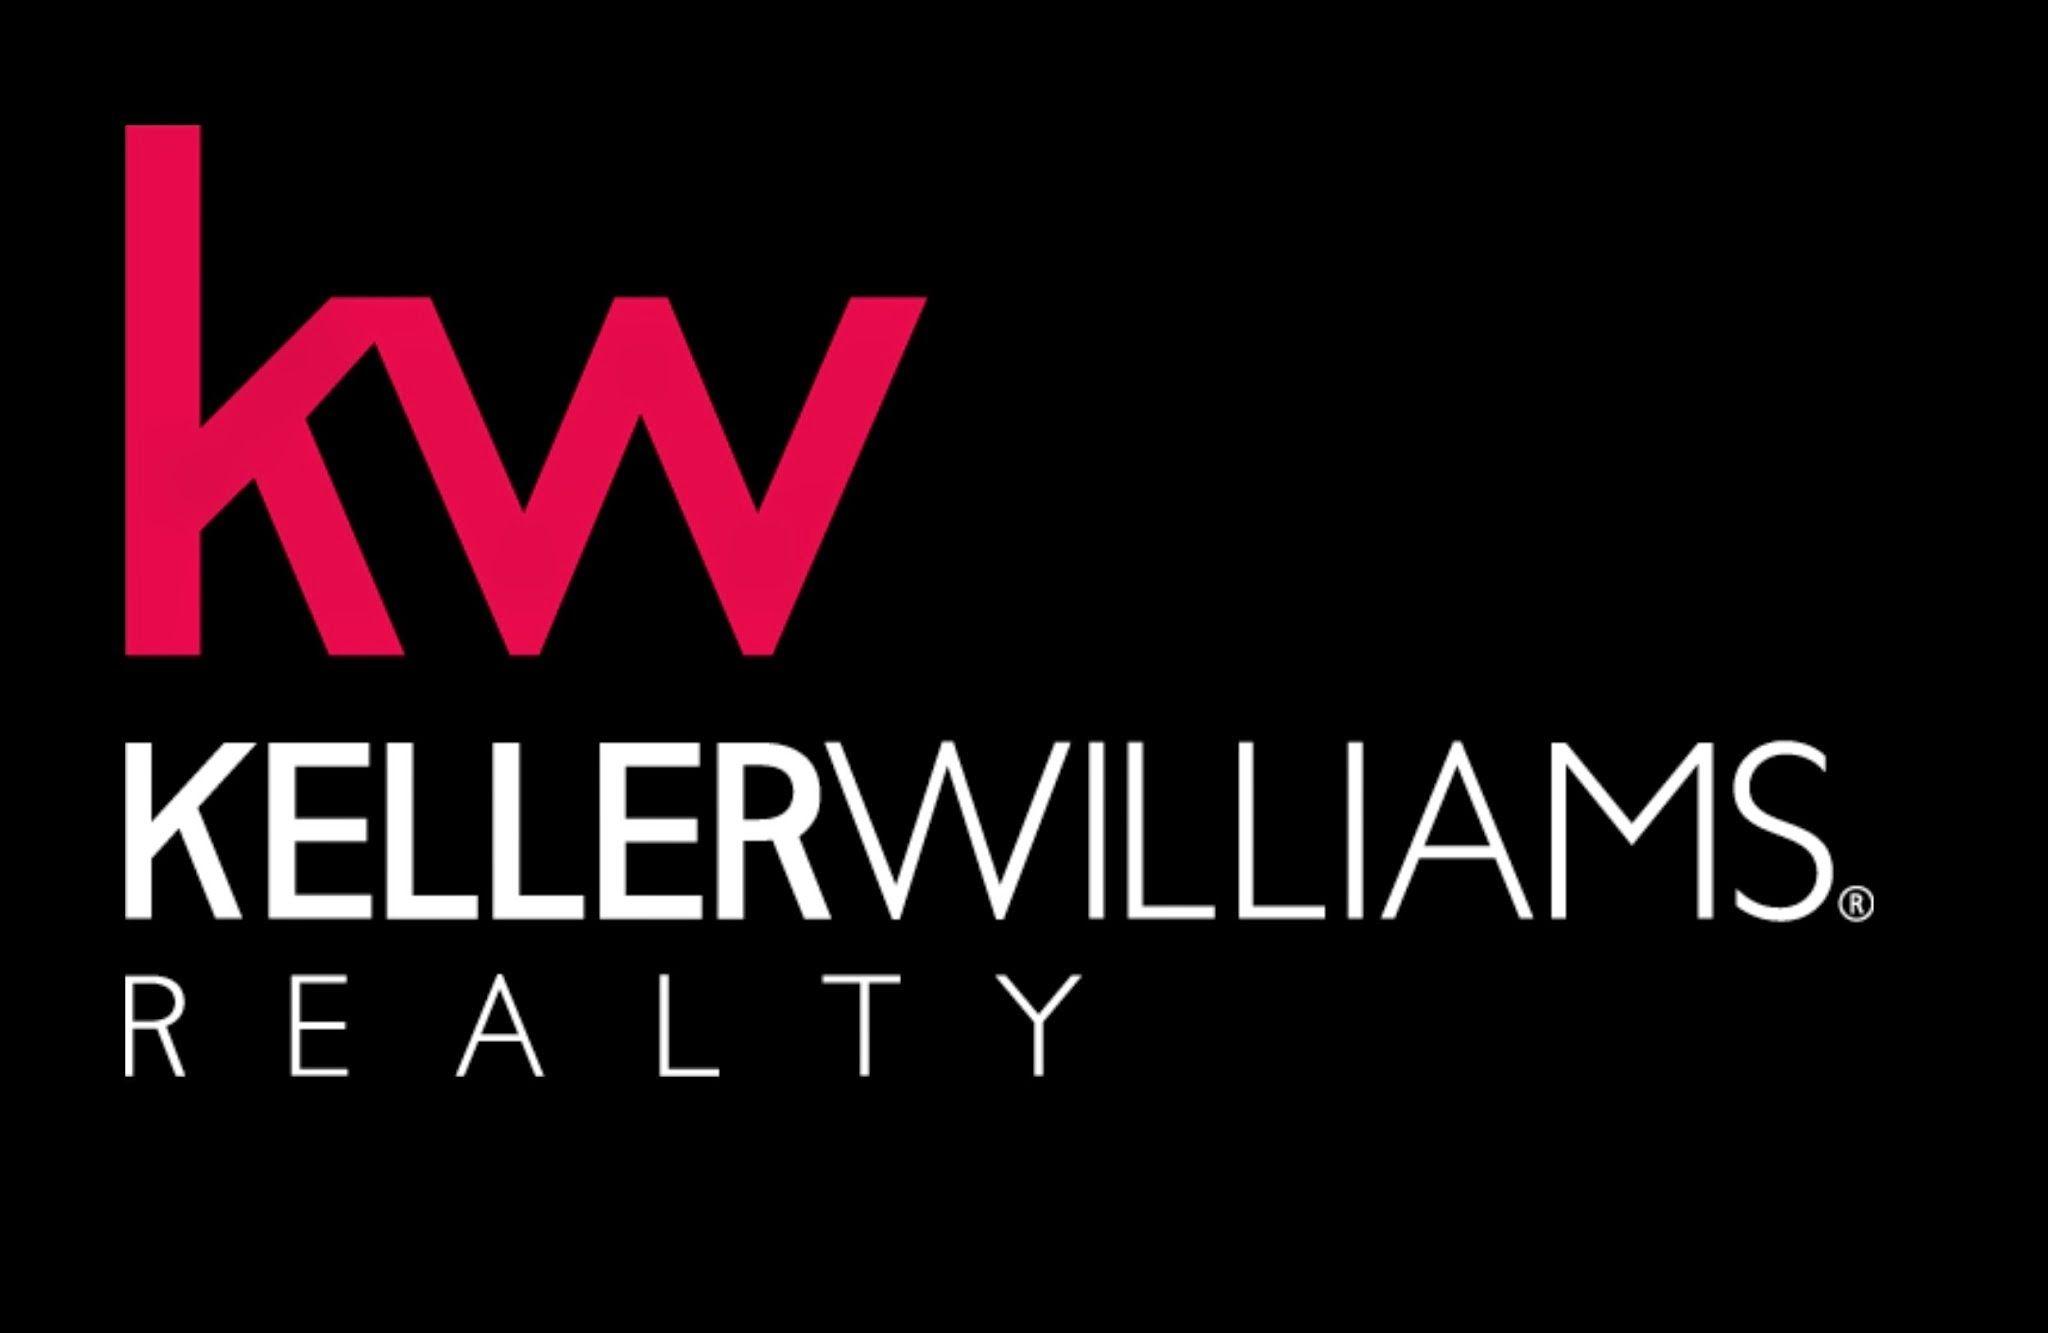 Keller Williams Logo - Keller williams realty Logos